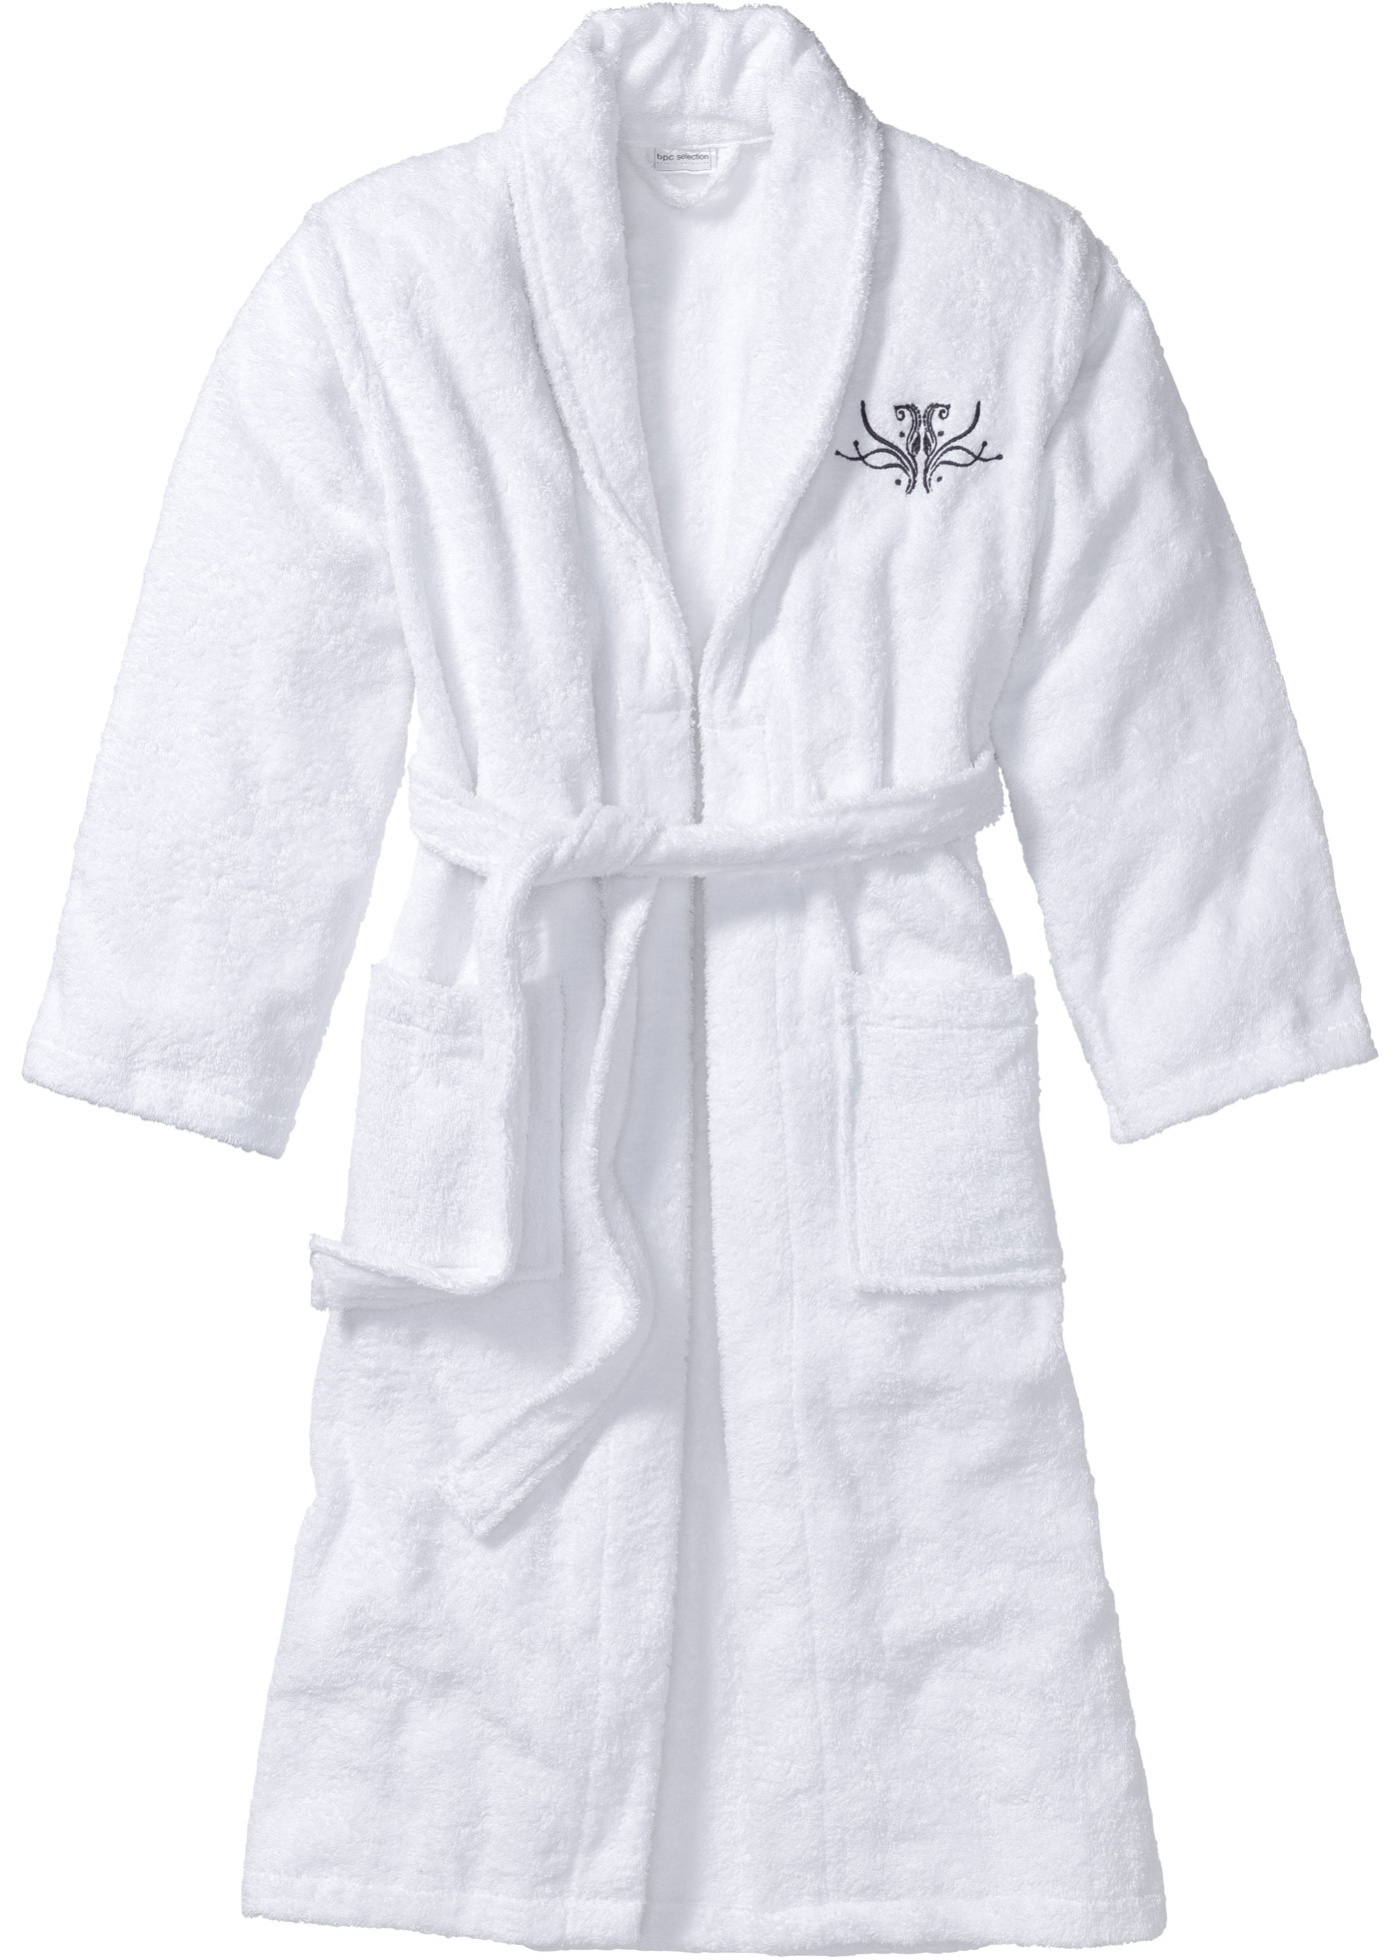 Купить халат в красноярске. Huber Tricot халат. Махровый халат. Банный халат. Белый махровый халат.